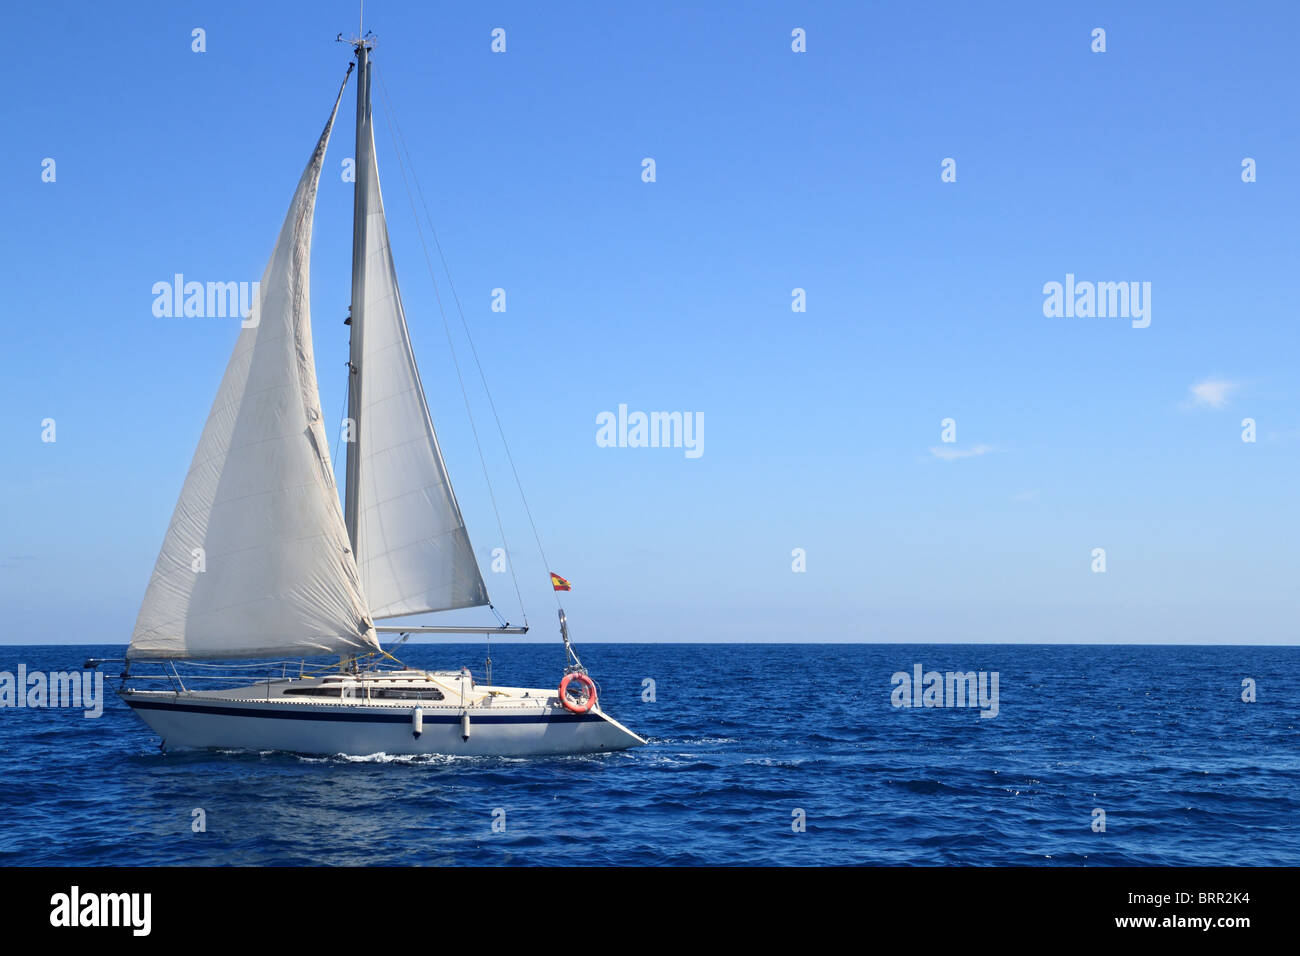 schönes Segelboot segeln Segel blaue Mittelmeer Ozean Horizont Stockfoto